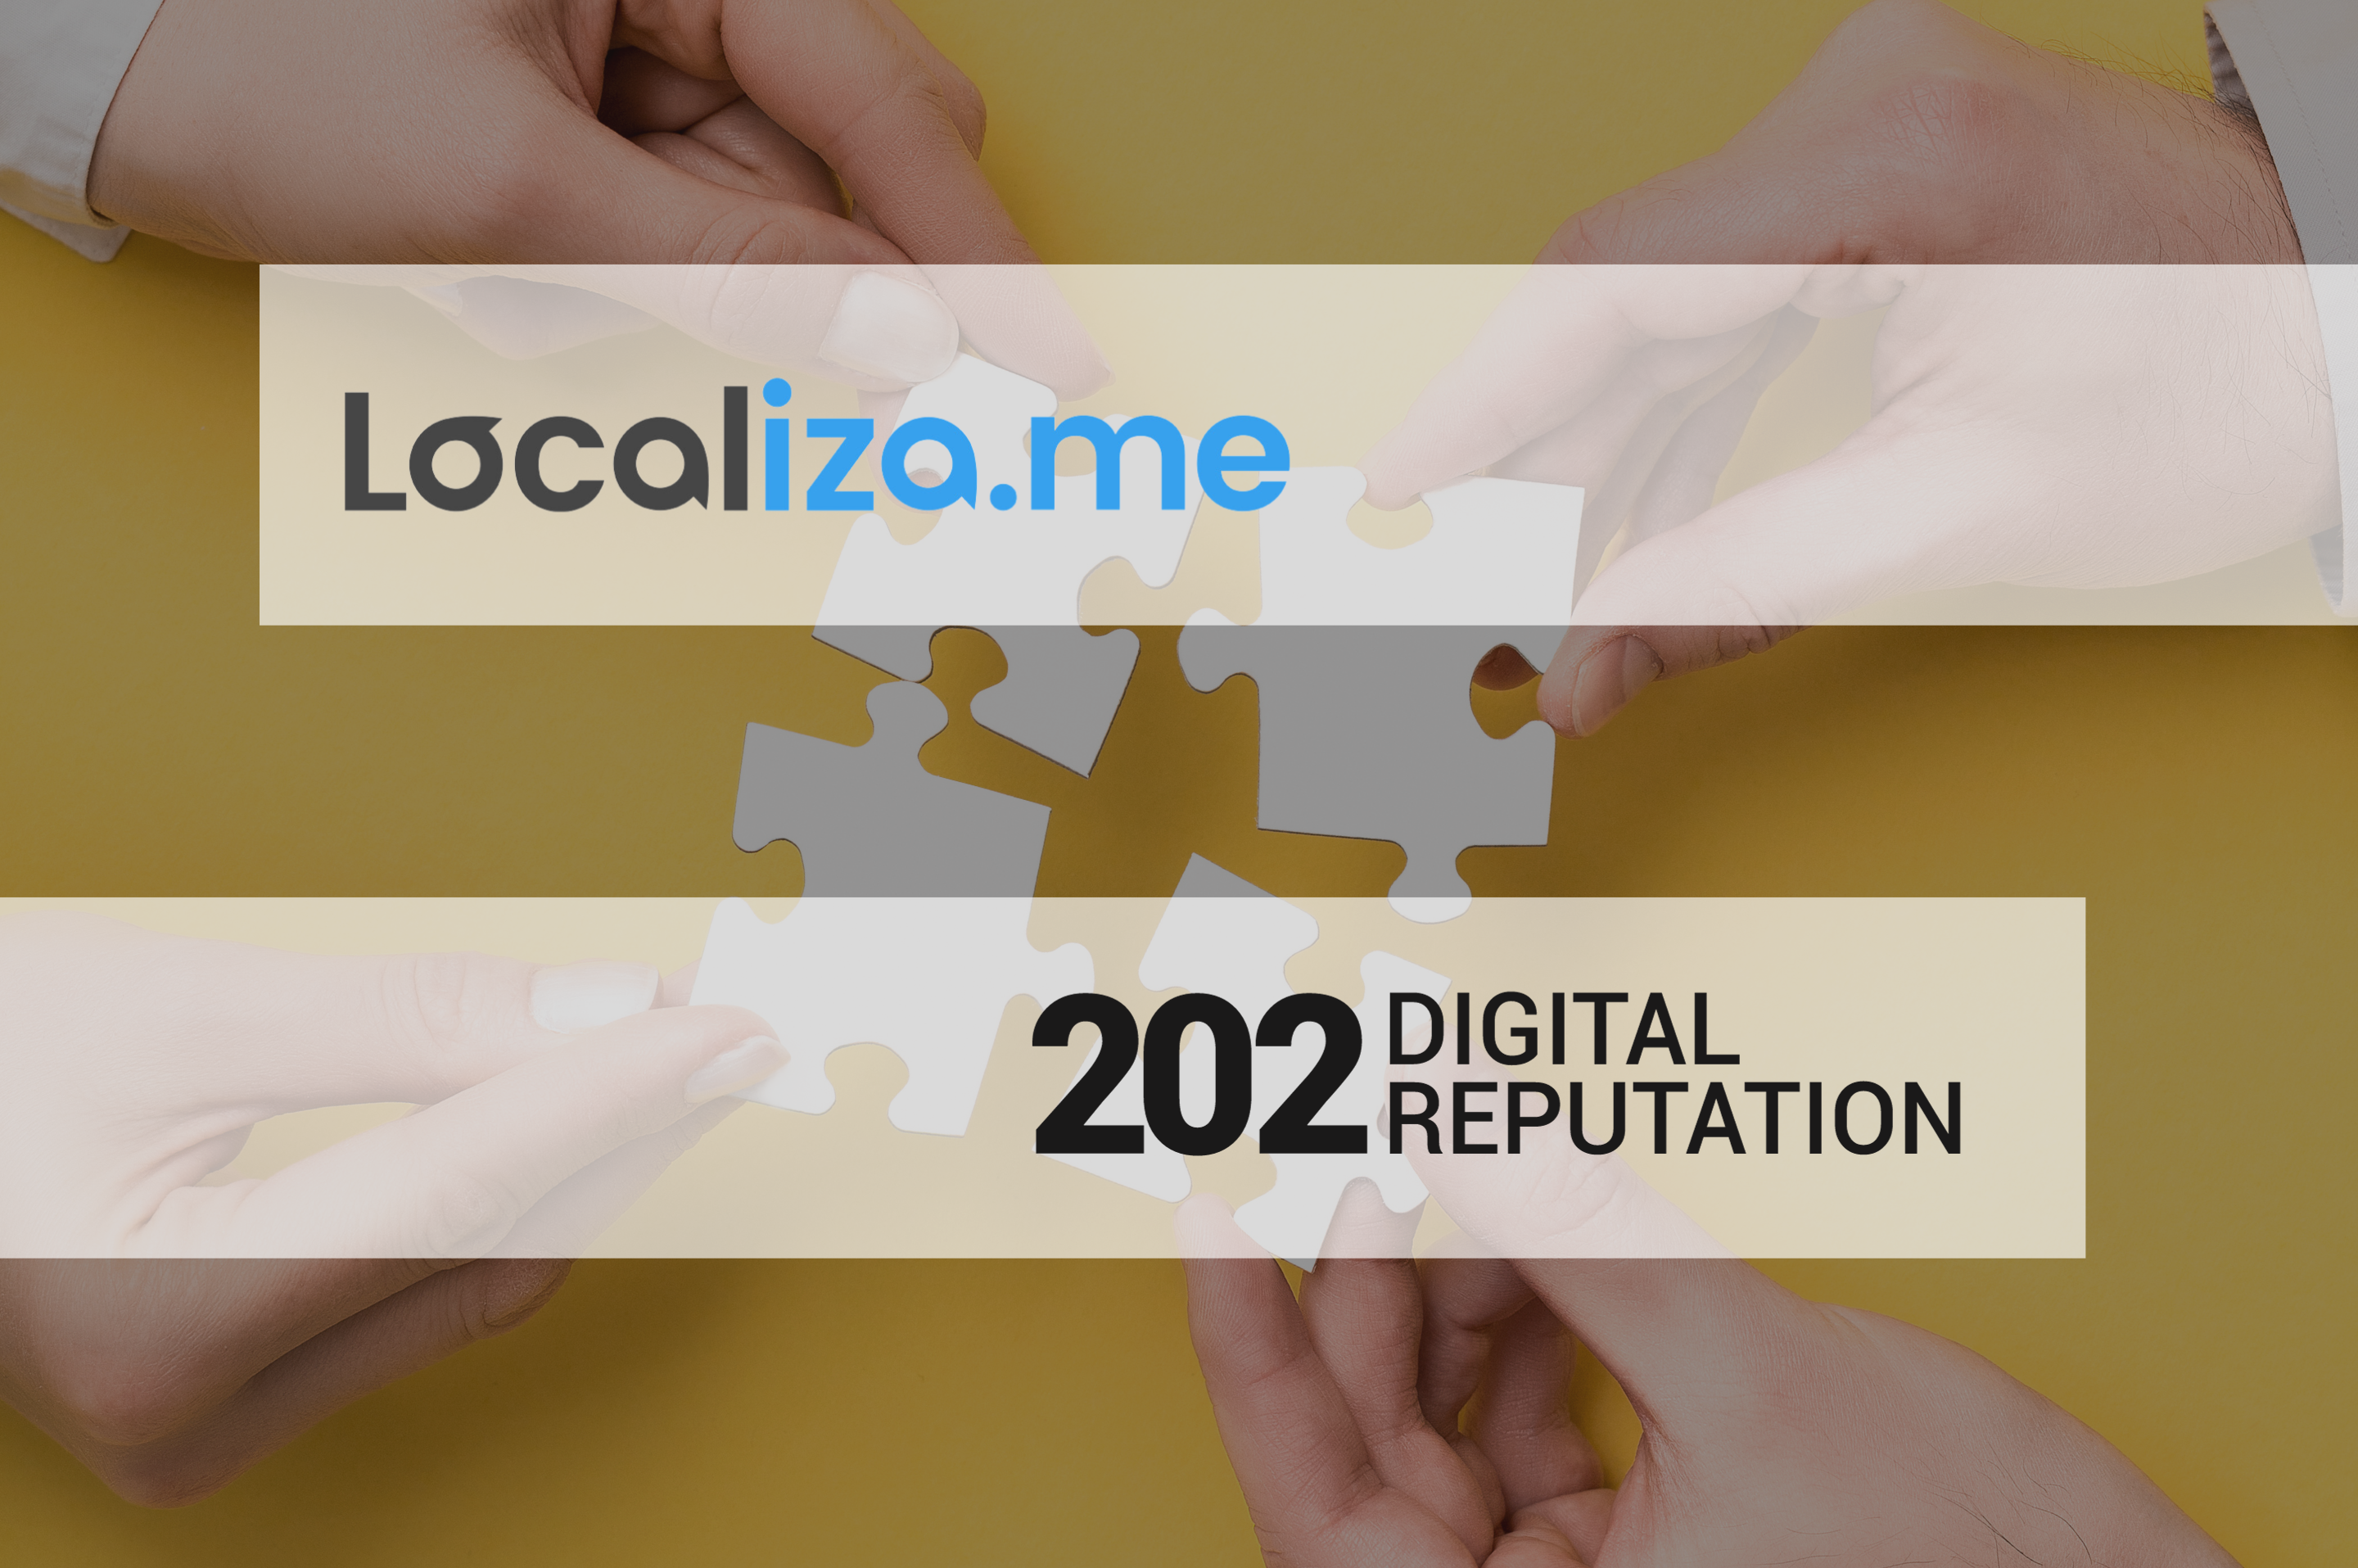 La Gestión de Reputación Digital y SEO Local: La Alianza Estratégica de Localiza.me y 202 Digital Reputation